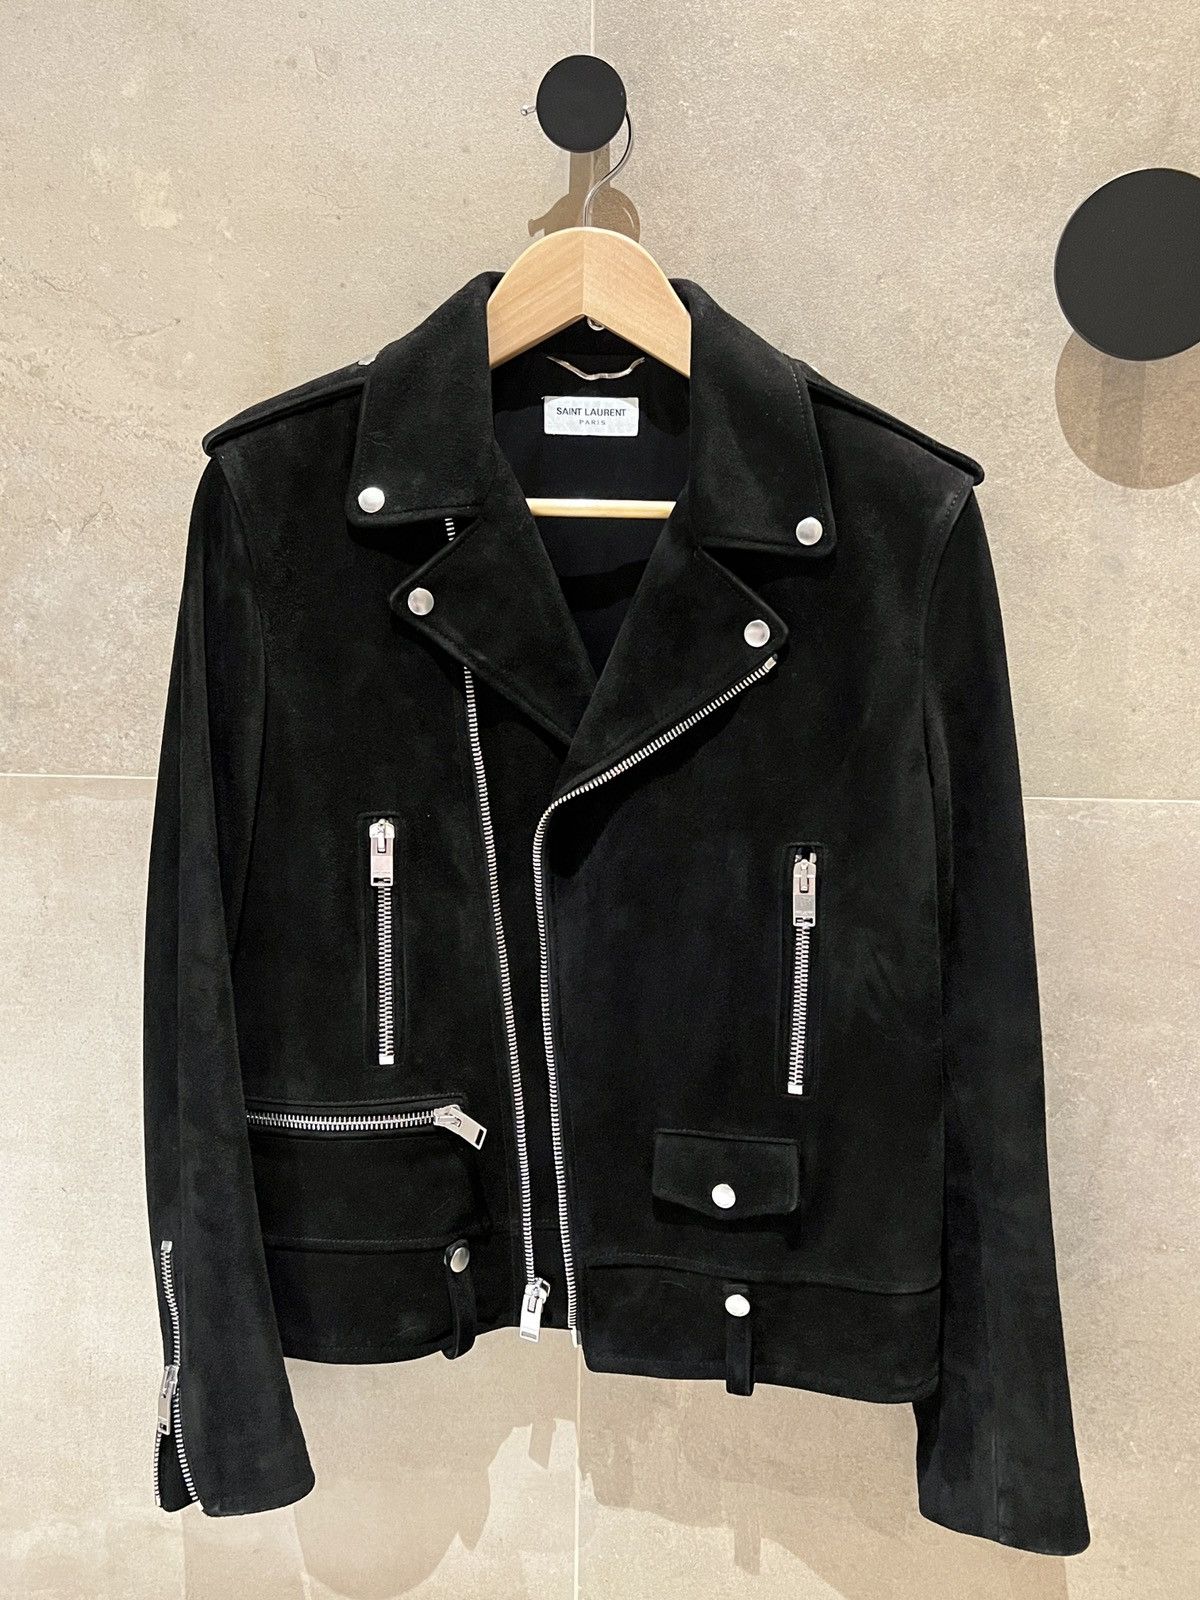 Saint Laurent Paris L01 suede leather jacket RARE hedi slimane | Grailed